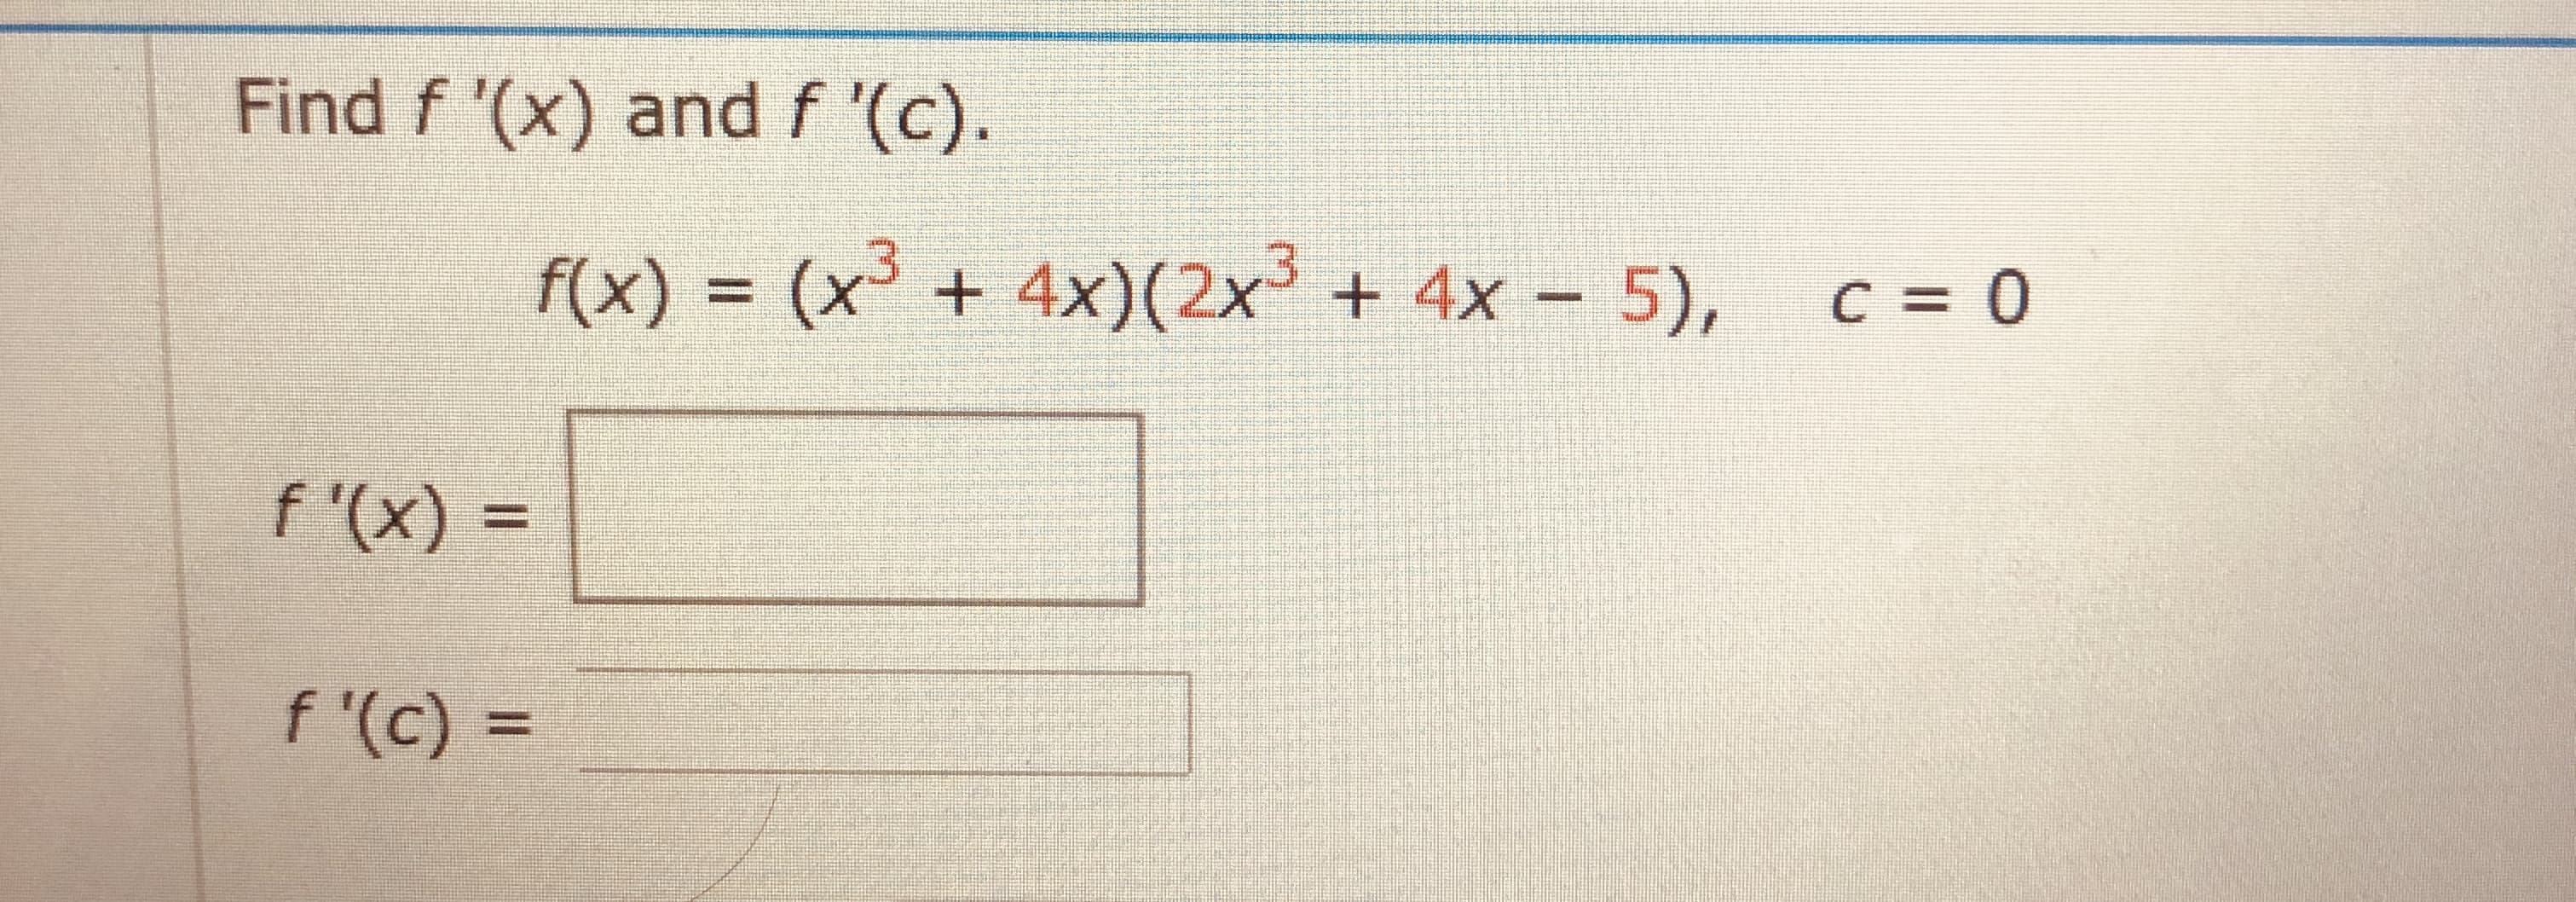 Find f '(x) and f '(c).
f(x) = (x³ + 4x)(2x³ + 4x – 5),
C = 0
%3D
